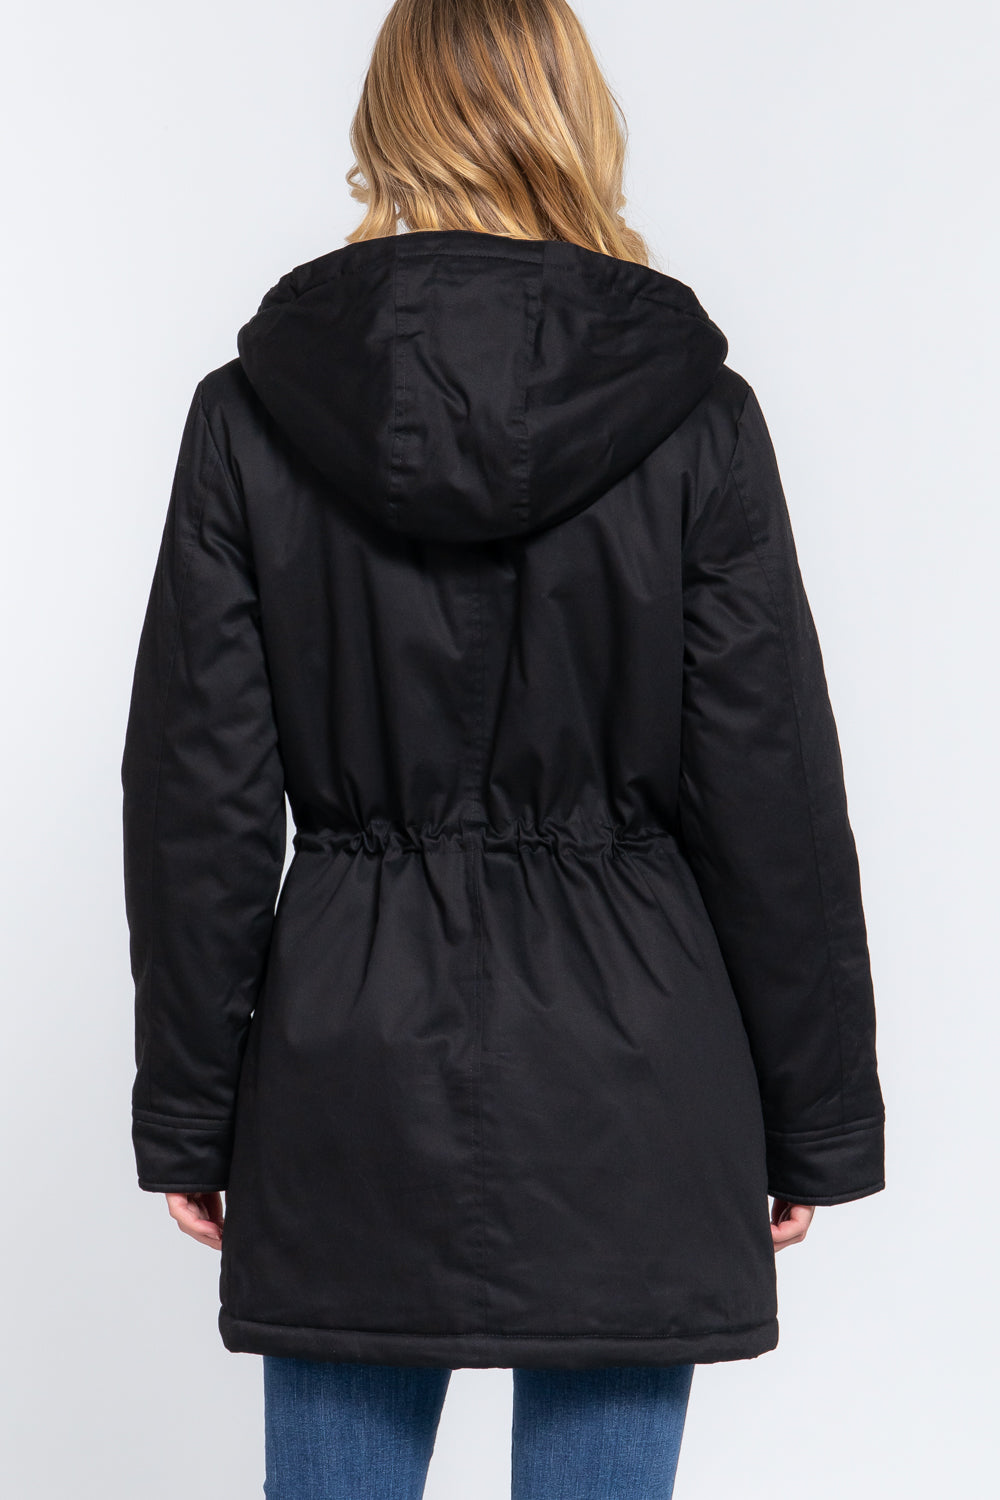 FZ Women's Fleece Lined Fur Hoodie Utility Jacket